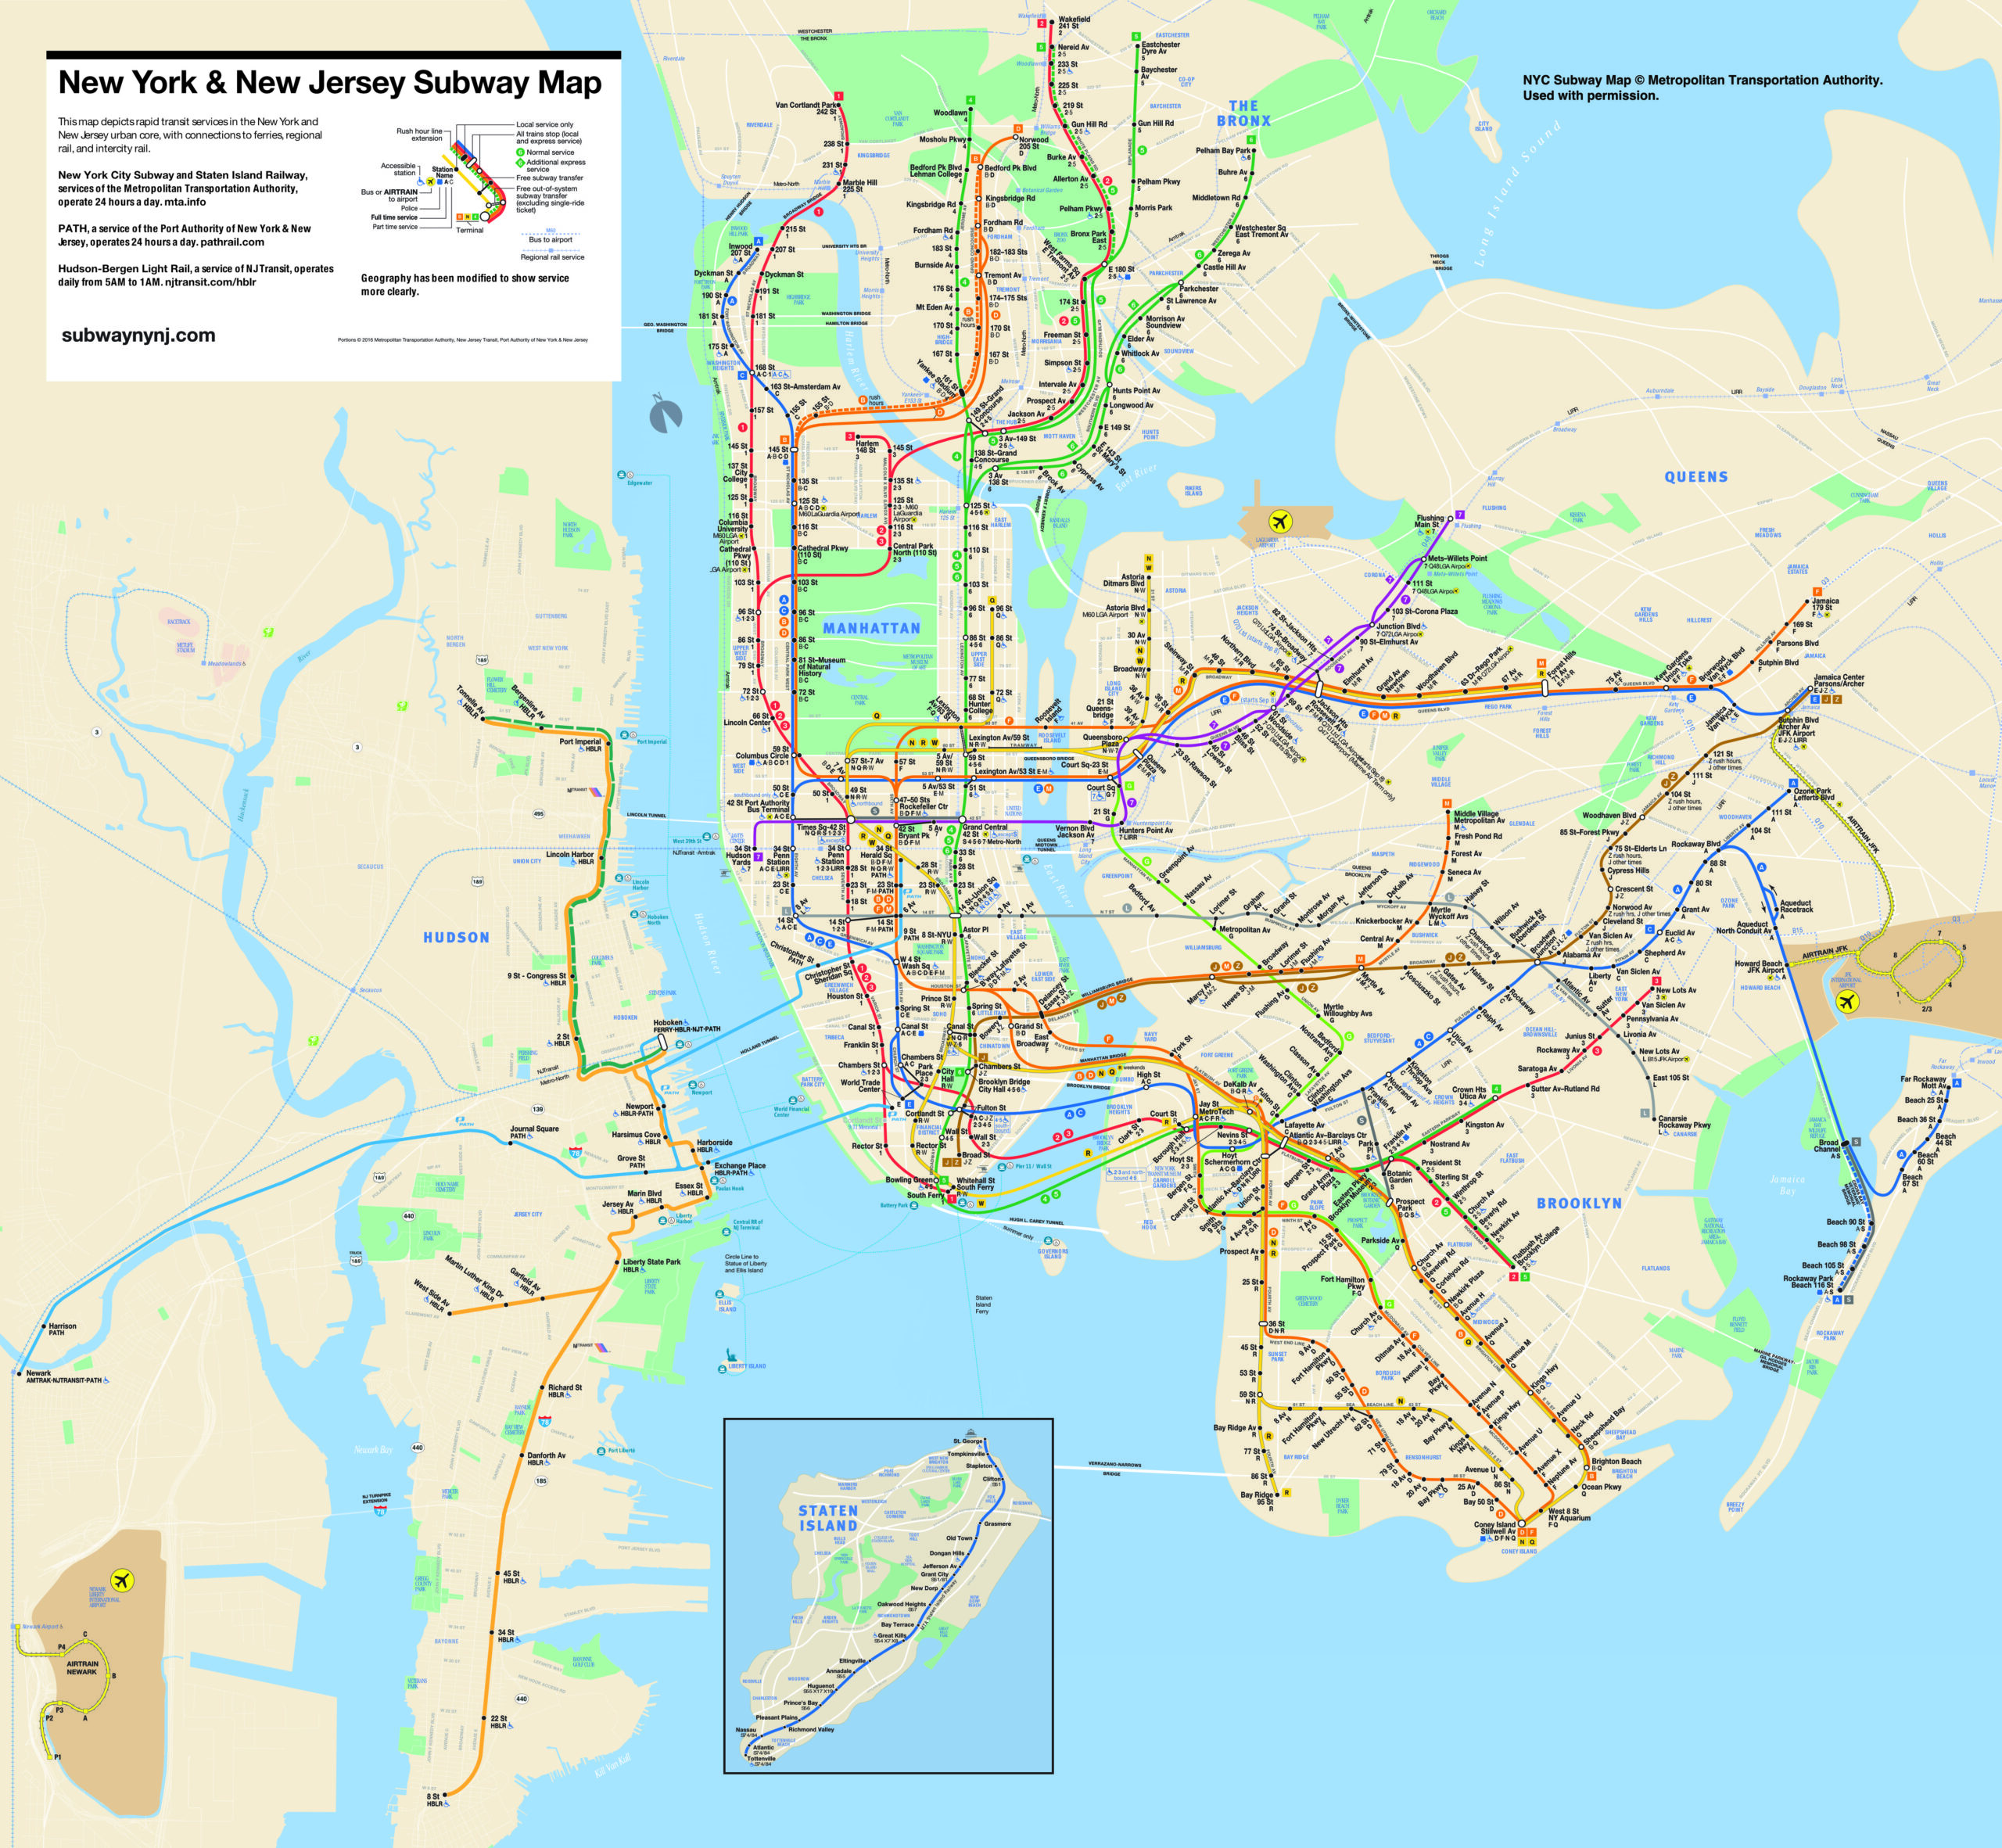 Chemie Het is de bedoeling dat Intiem New York & New Jersey Subway Map - Stewart Mader